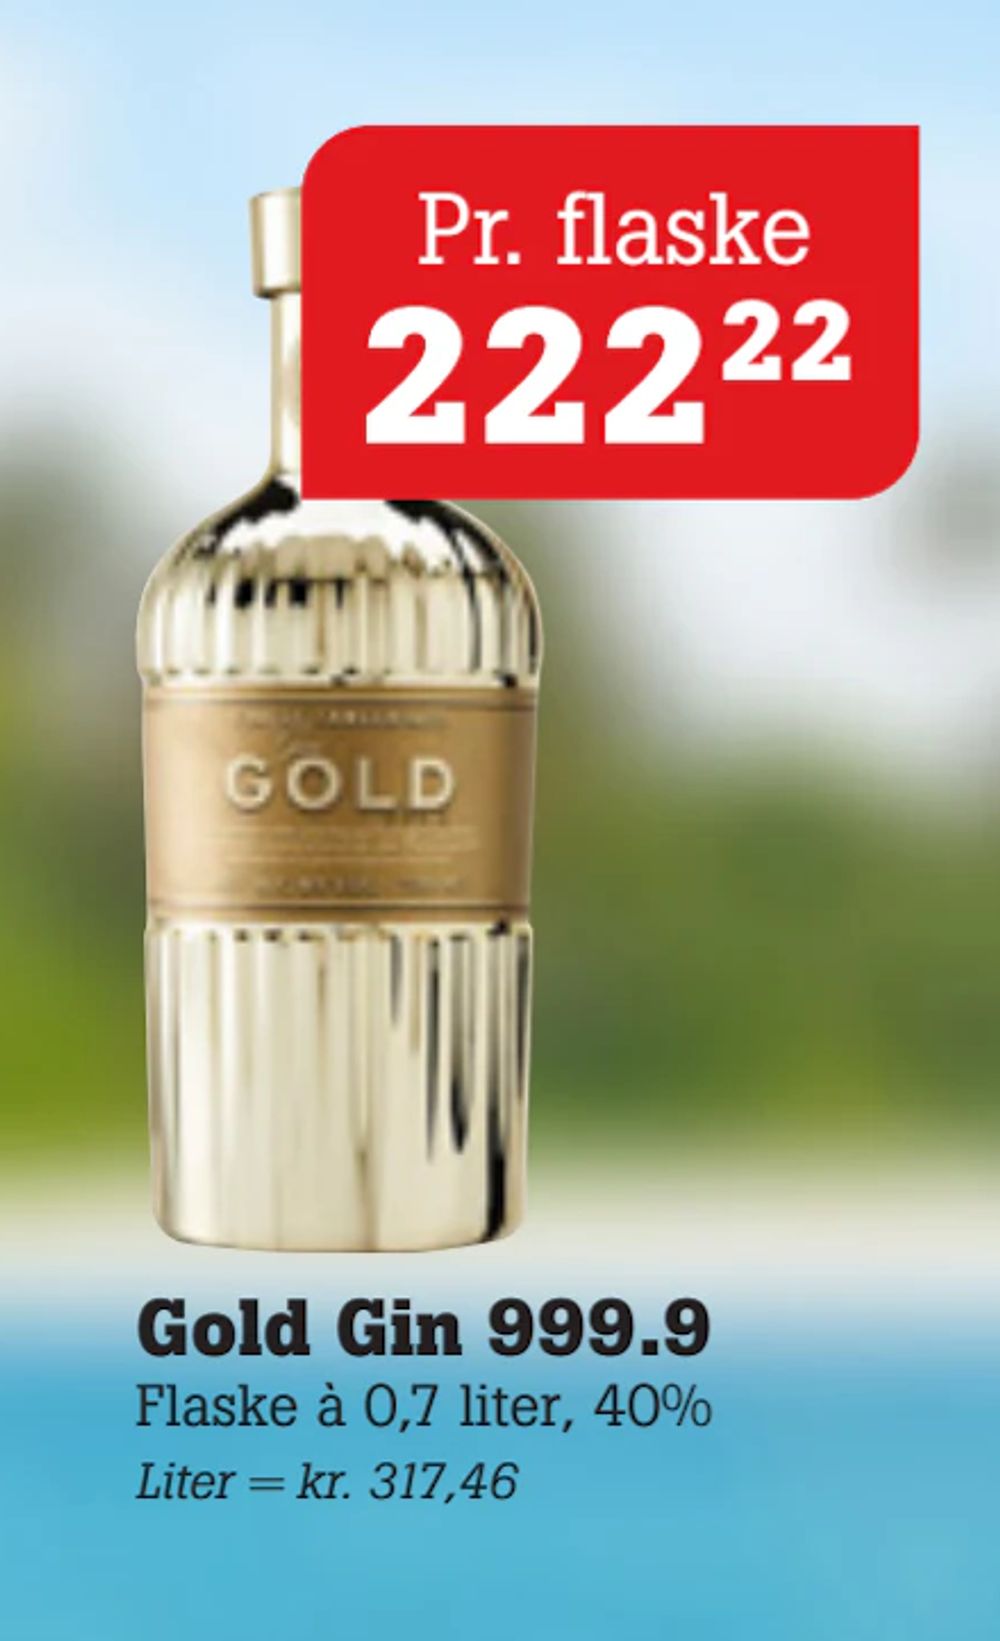 Tilbud på Gold Gin 999.9 fra Poetzsch Padborg til 222,22 kr.